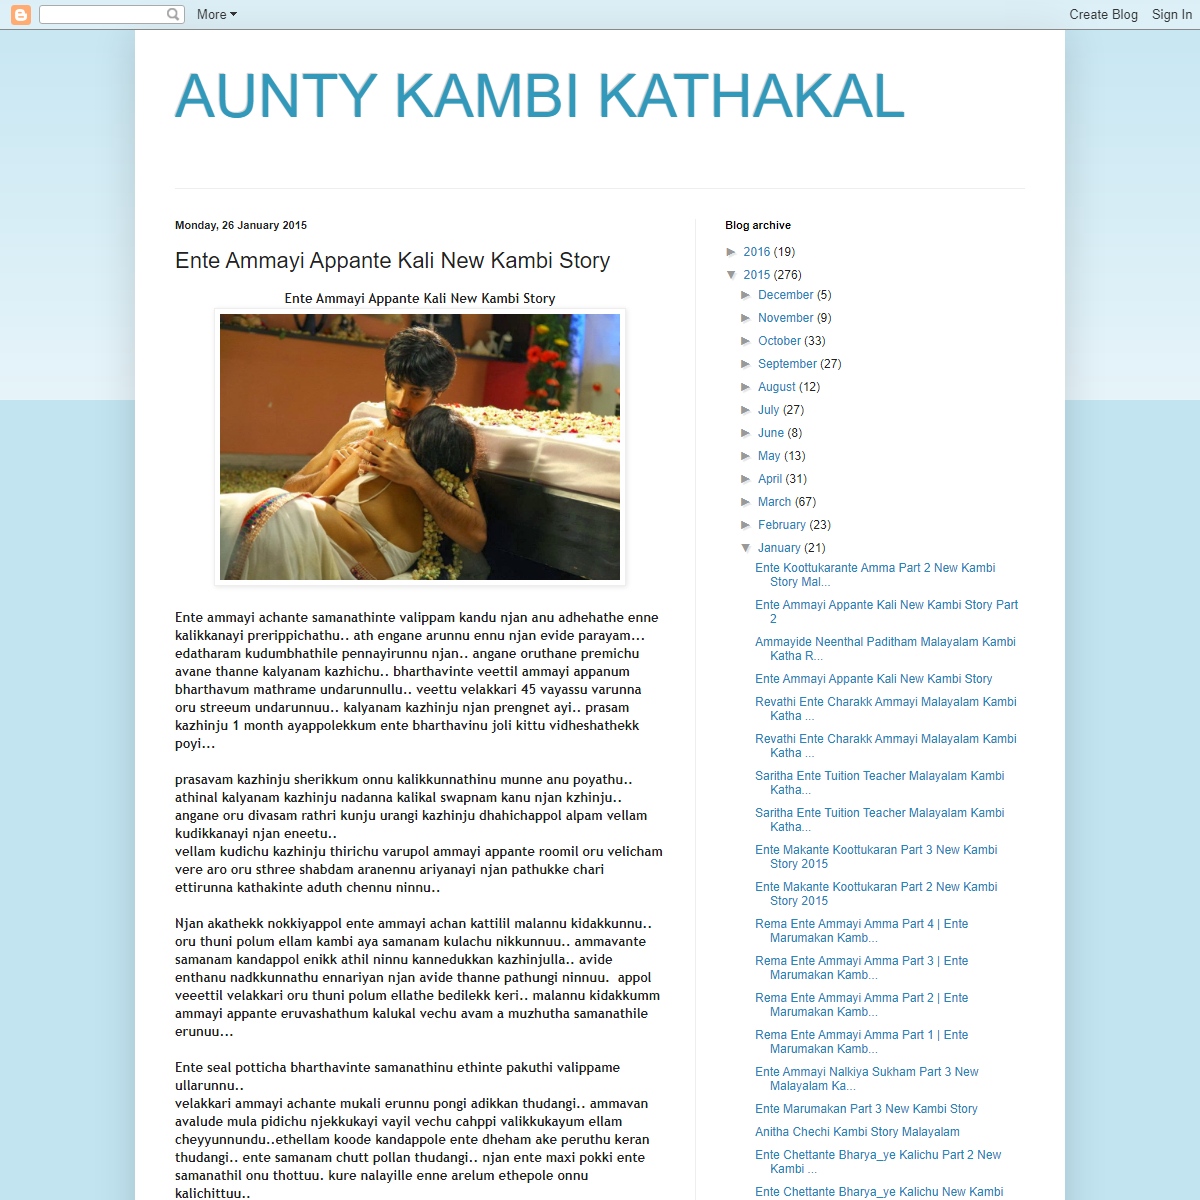 A complete backup of https://kambi-kathakal-malayalam.blogspot.com/2015/01/ente-ammayi-appante-kali-new-kambi-story.html